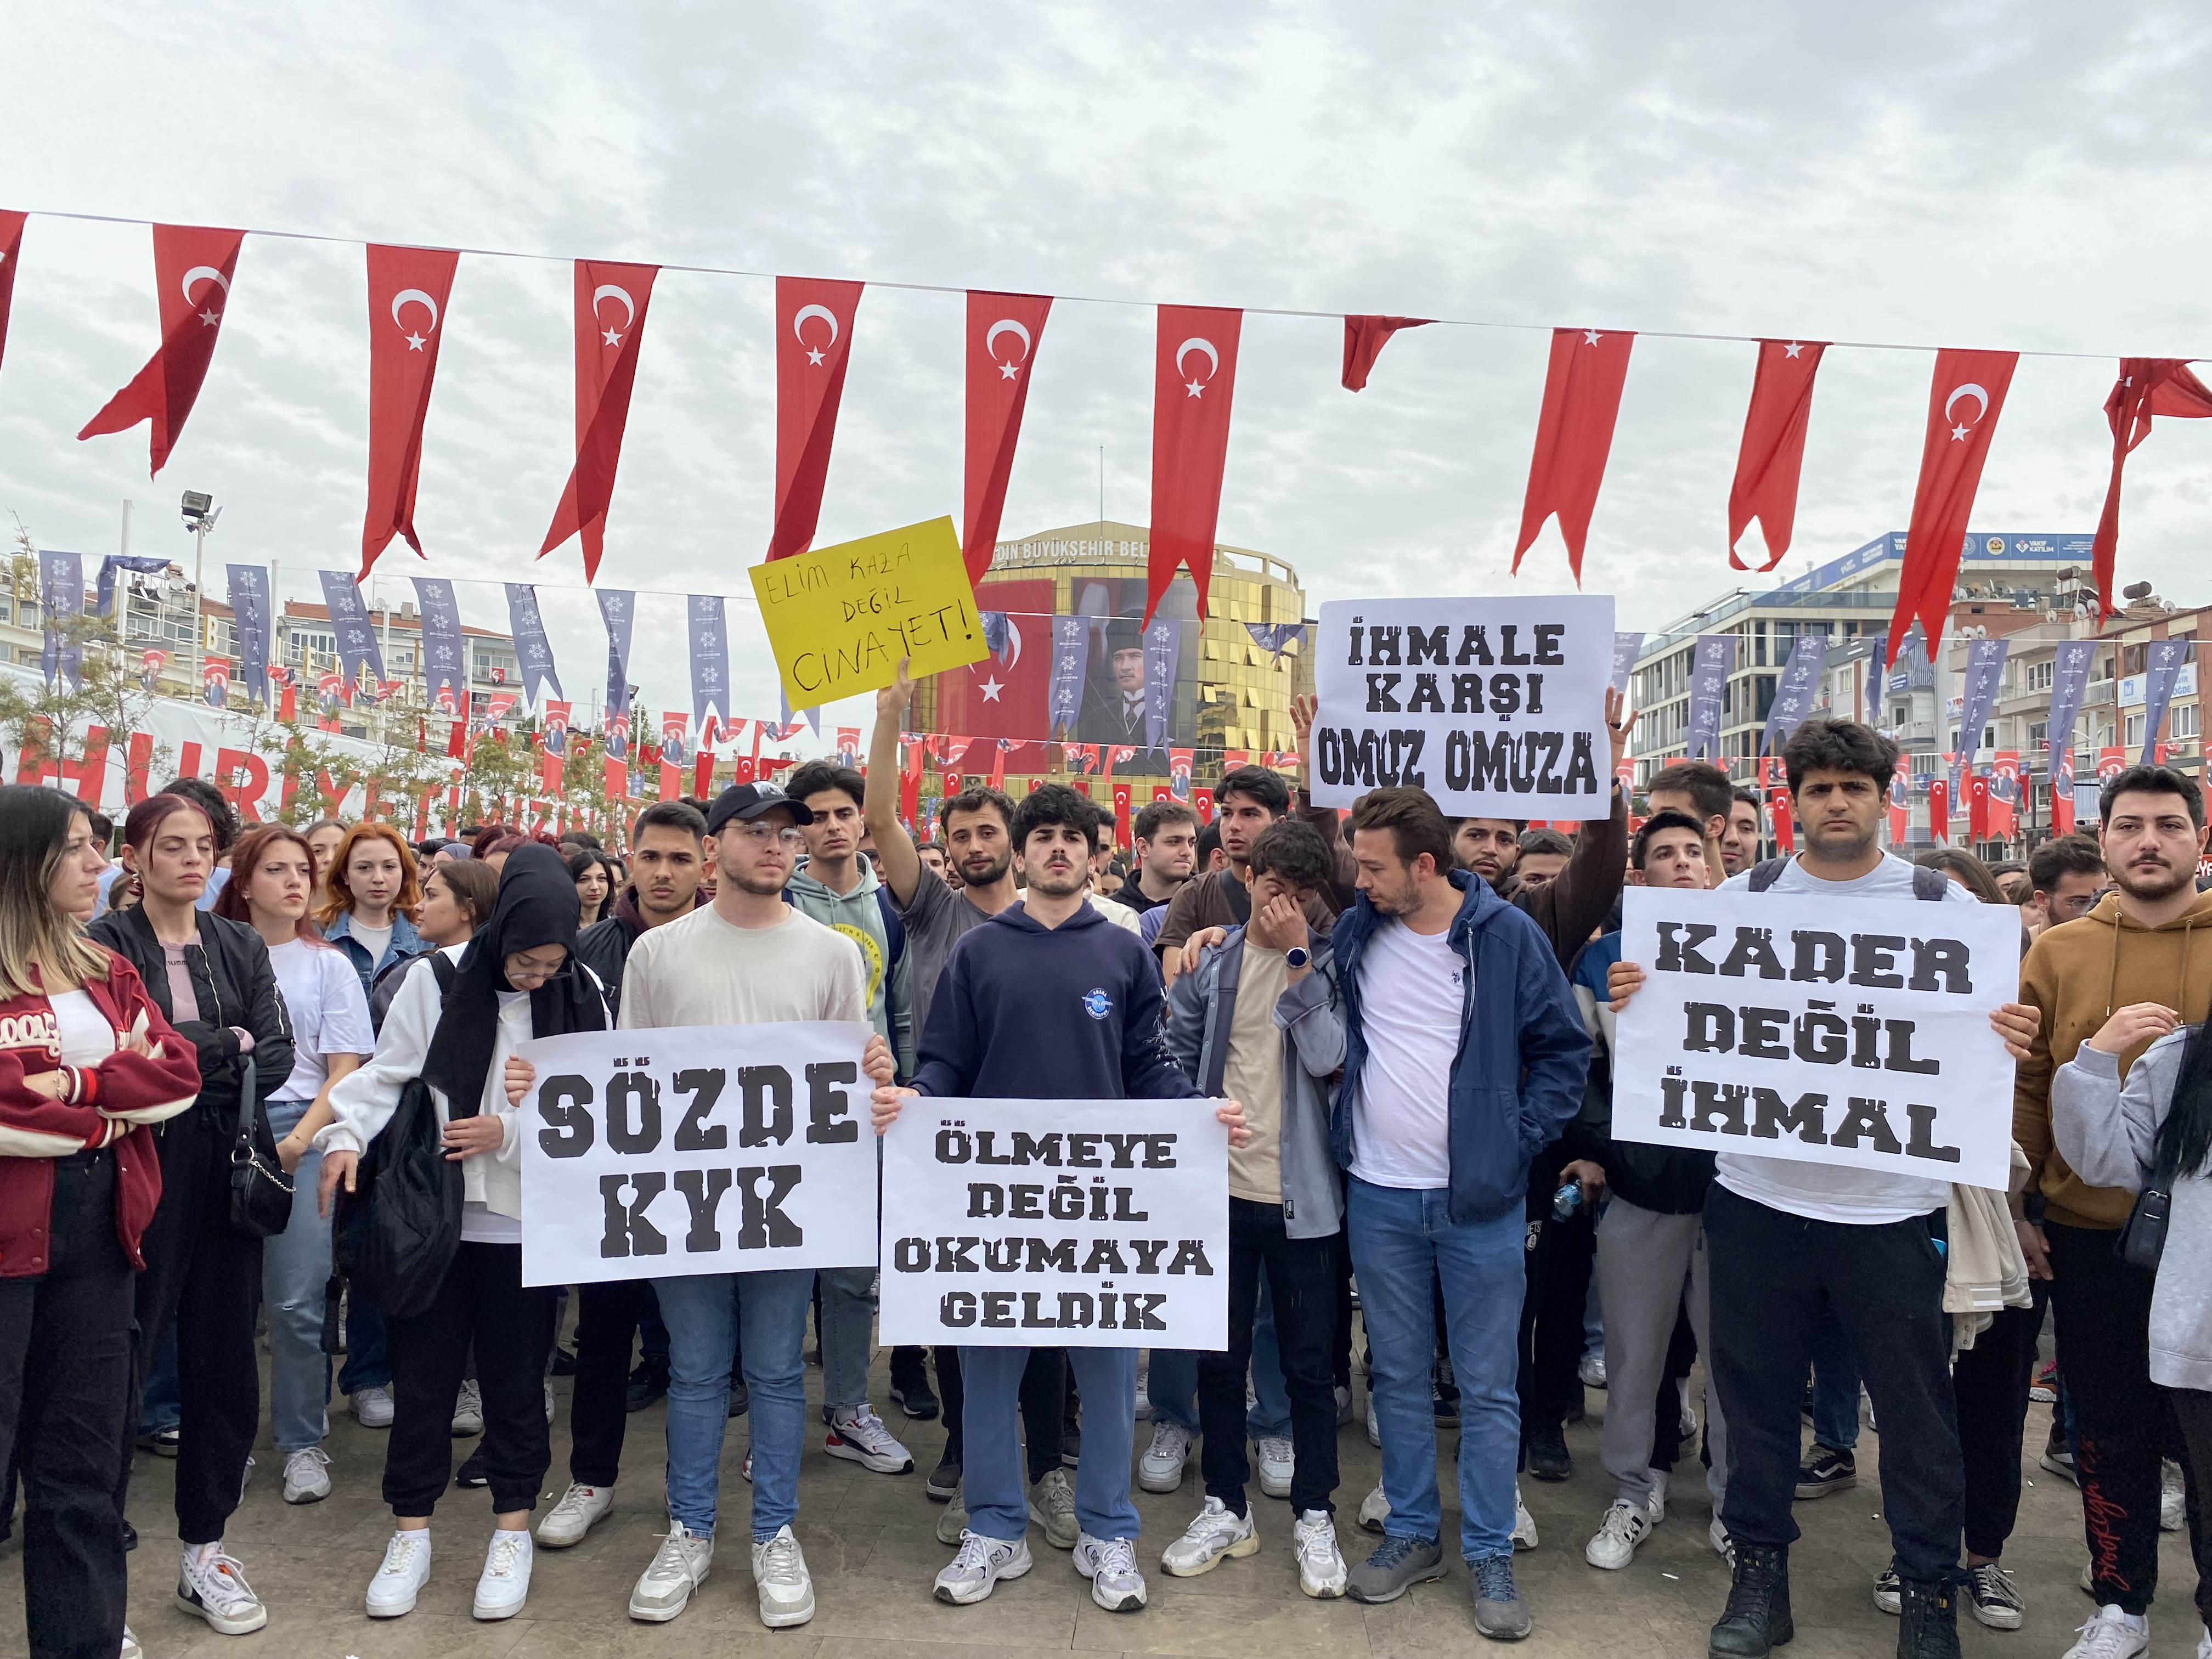 Aydın'da öğrencilerin eylemi devam ediyor! Bu sefer Kent Meydanı'nda toplandılar